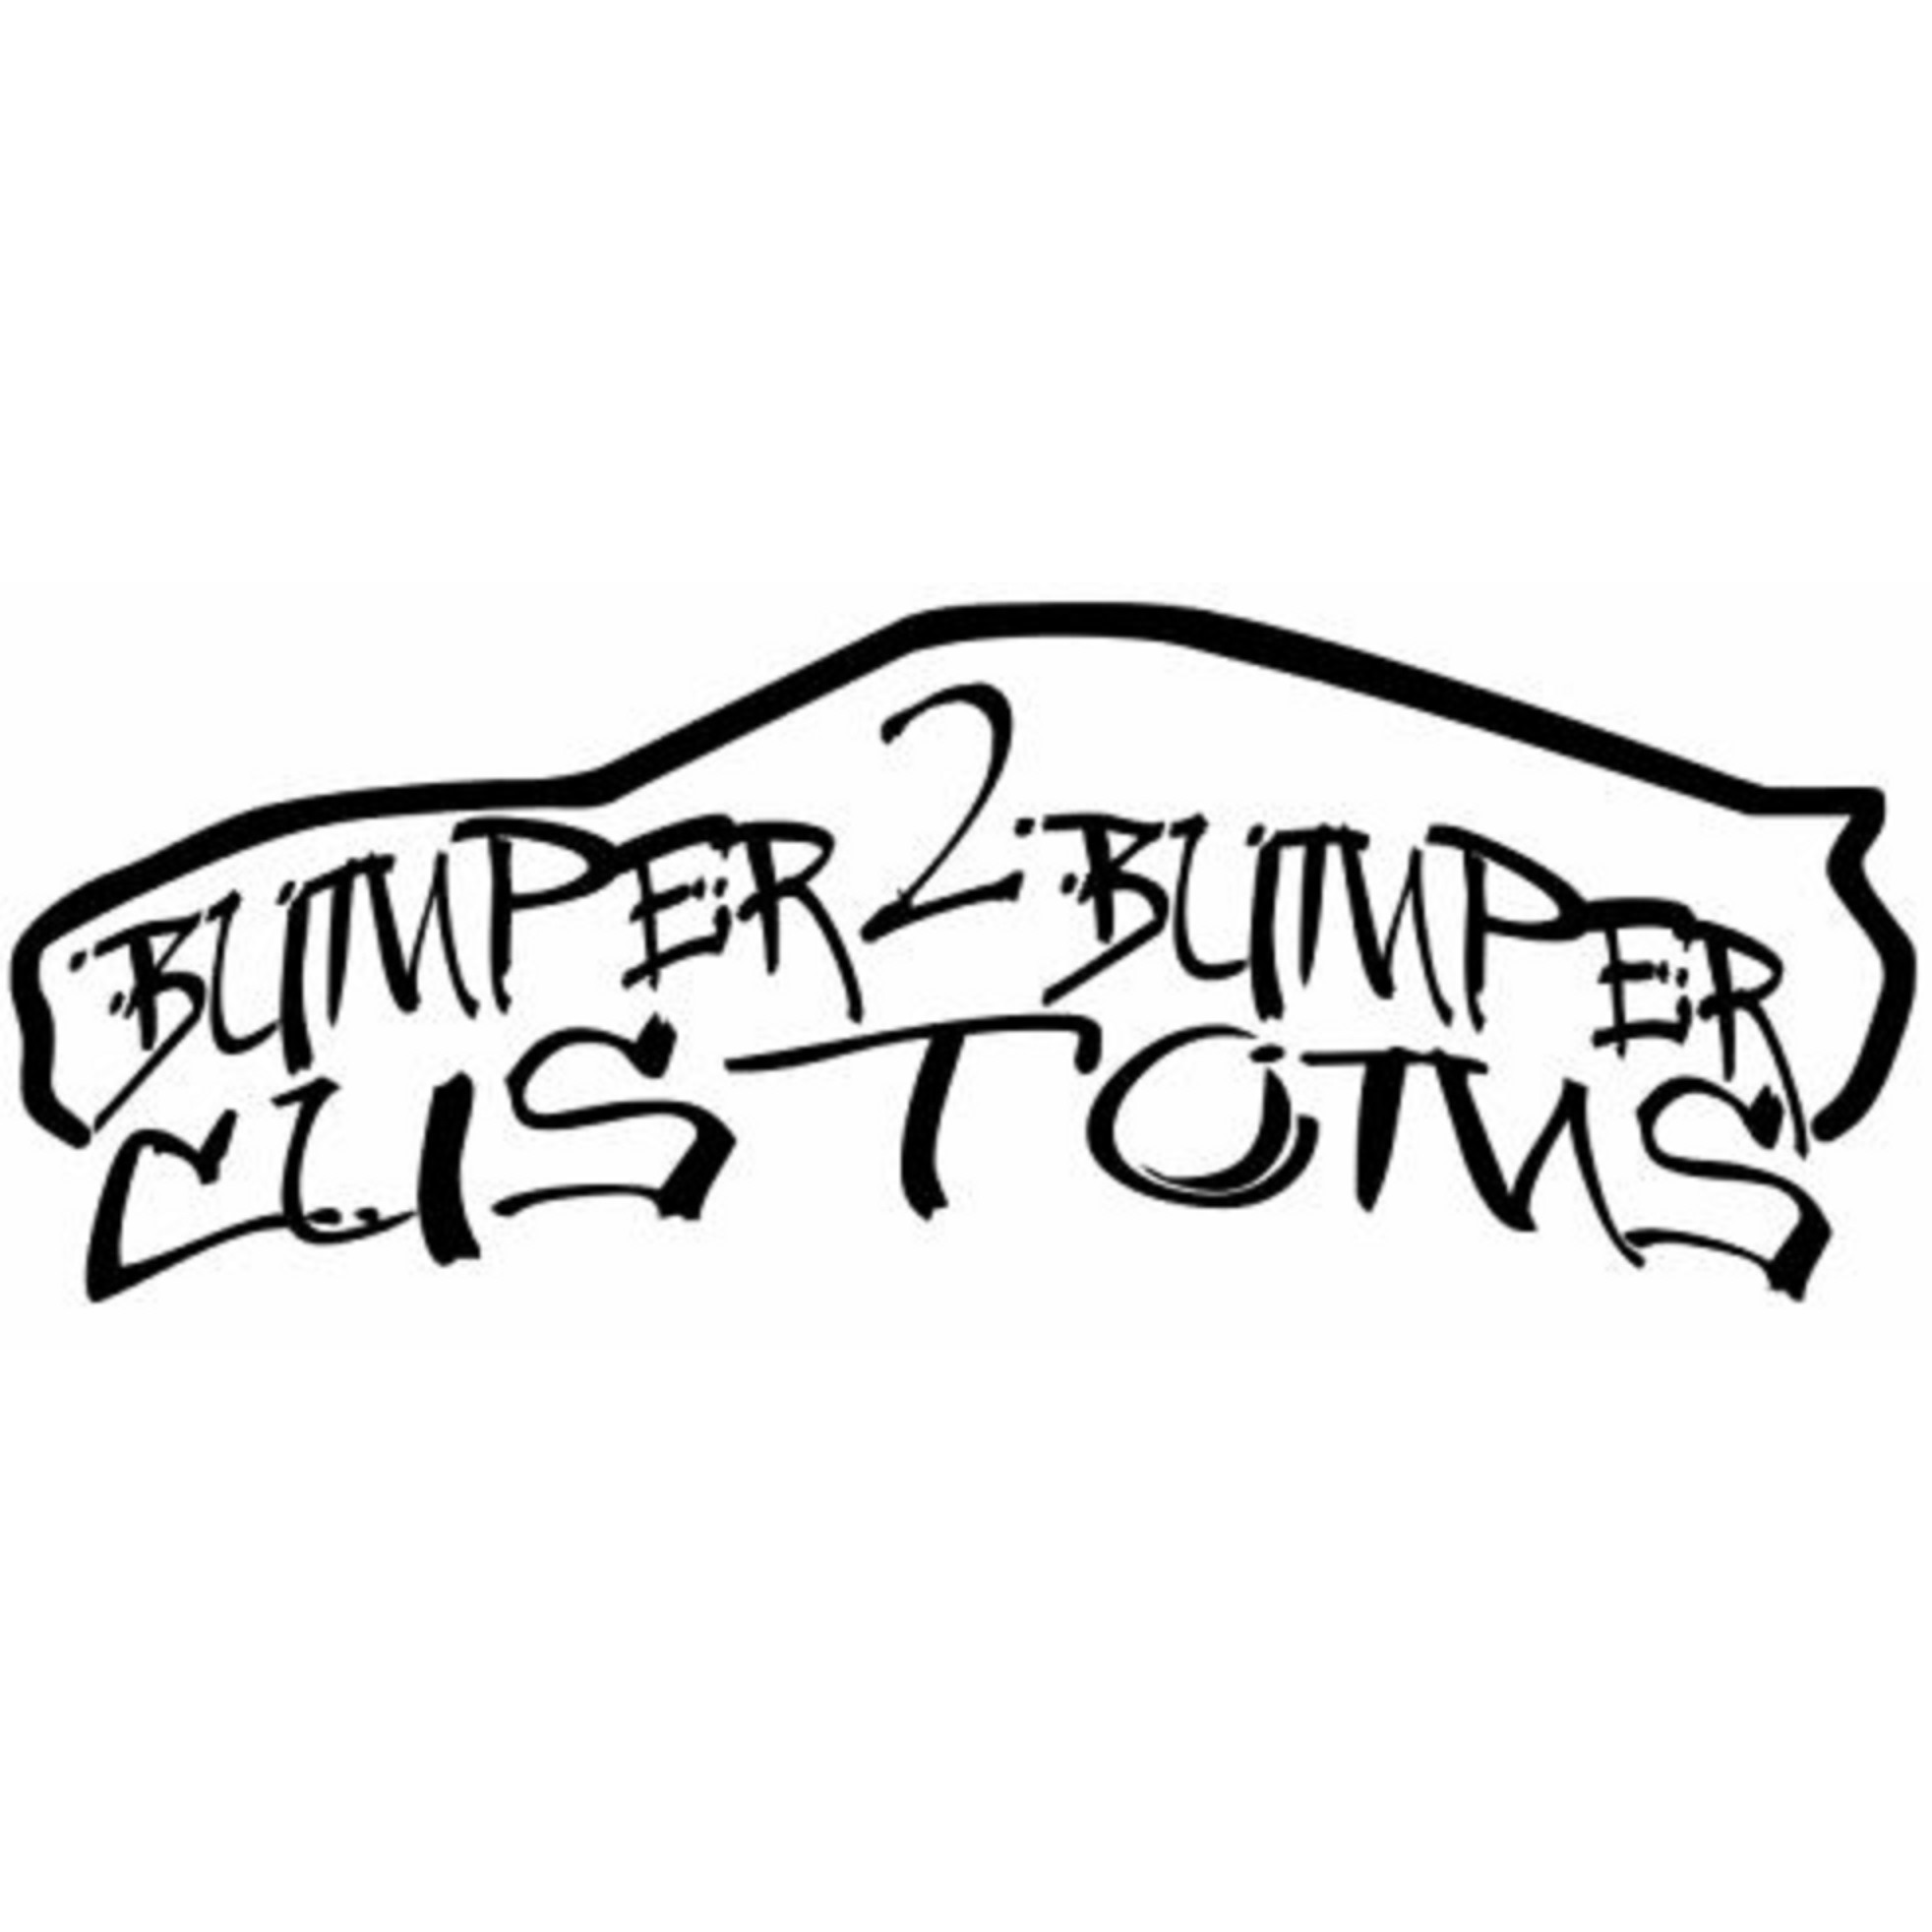 Bumper 2 Bumper Customs Logo